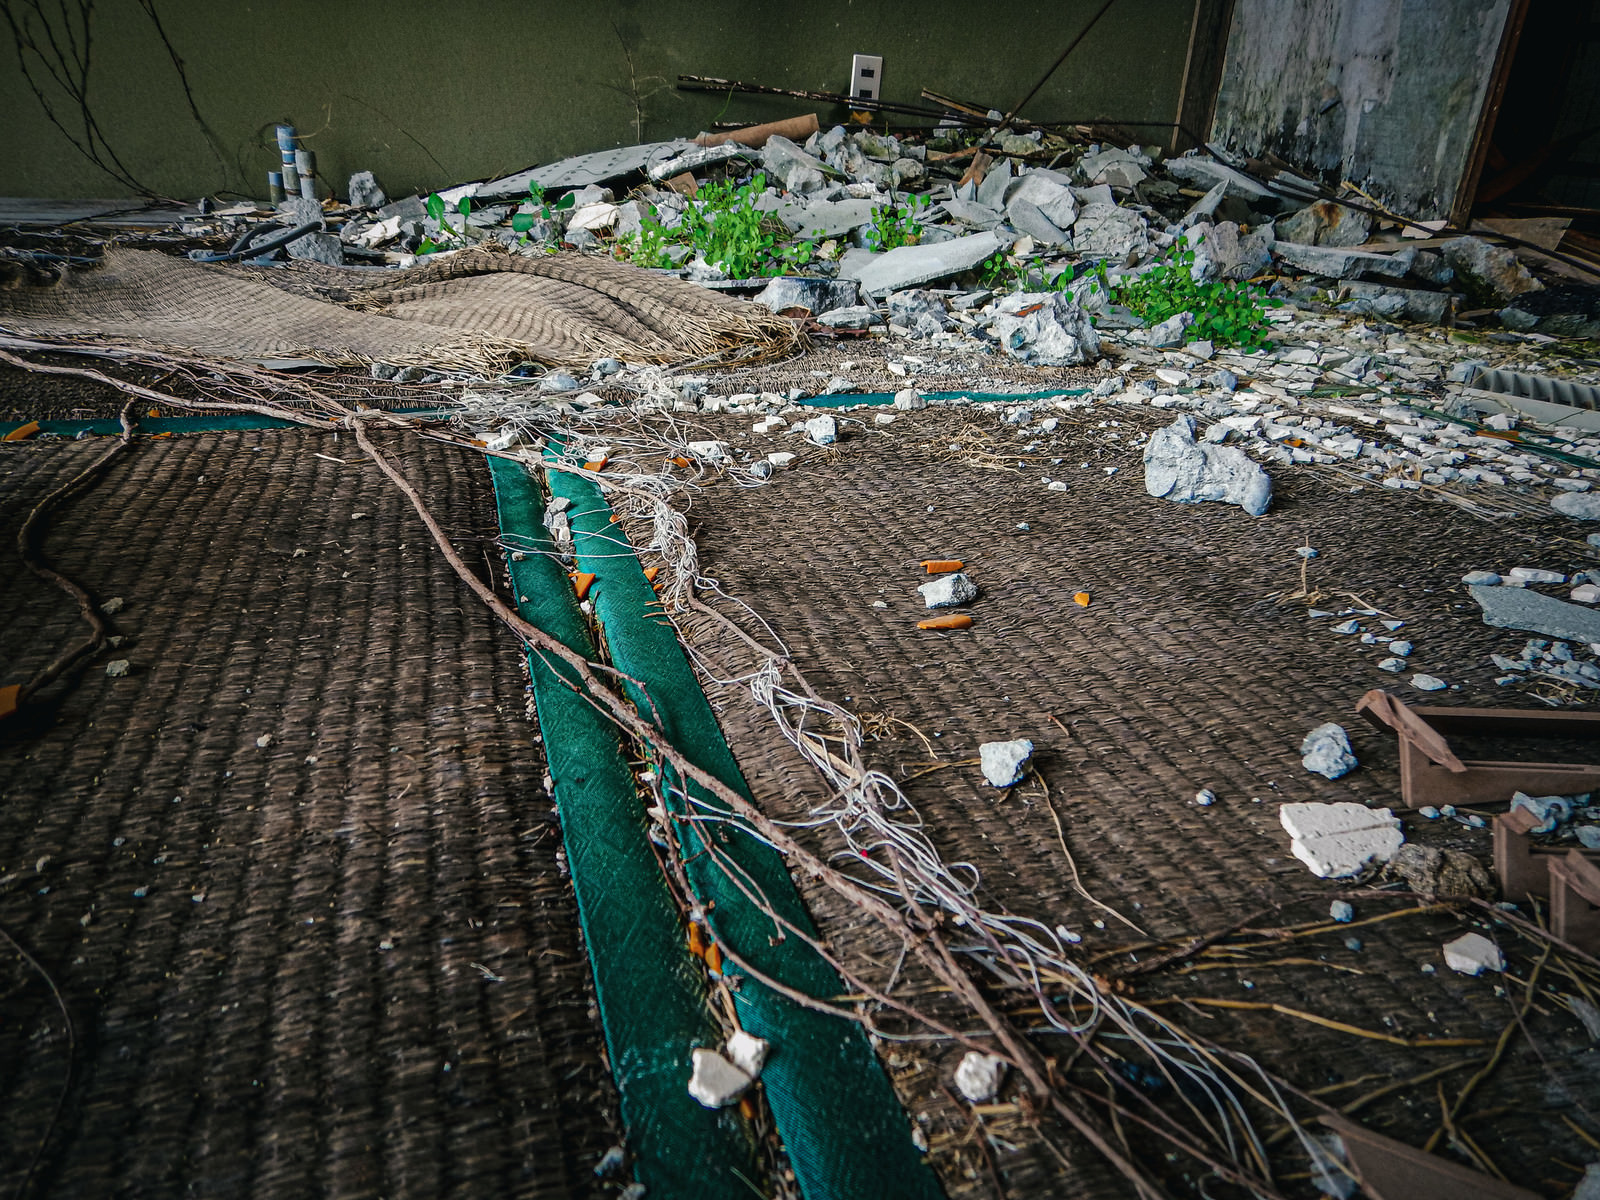 「畳から生えた雑草と砕けたコンクリート | フリー素材のぱくたそ」の写真